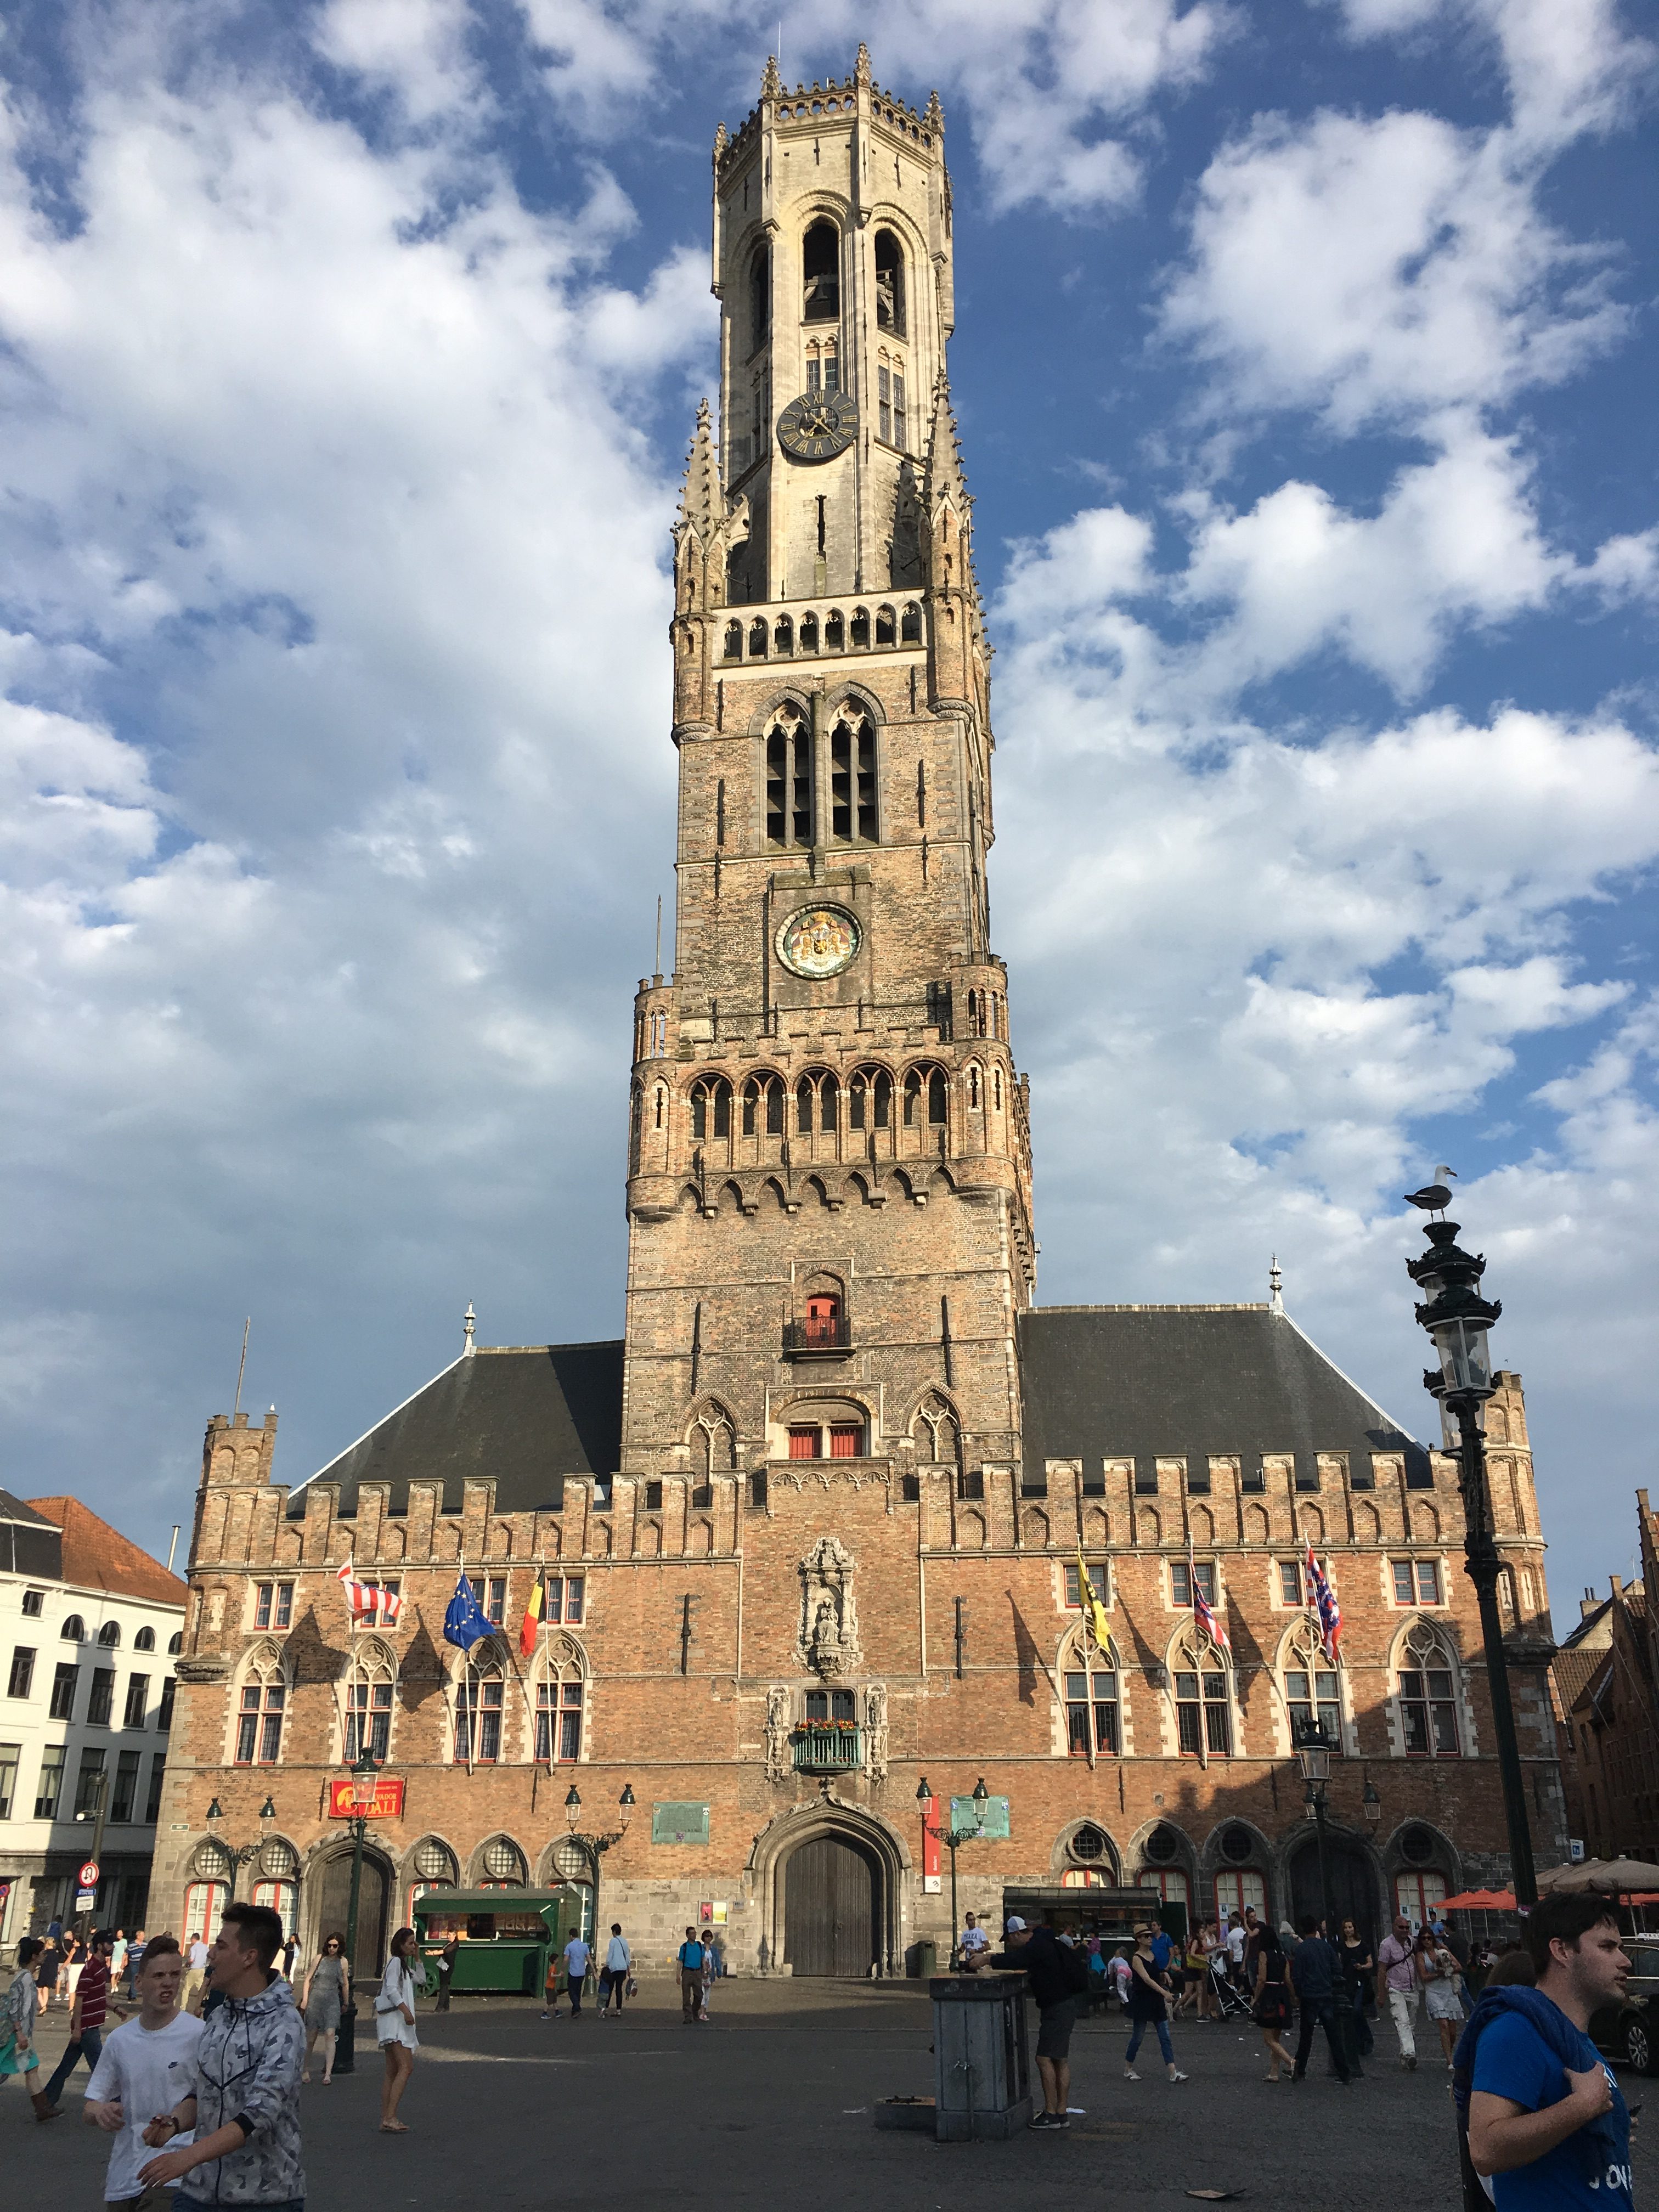 The Belfry of Bruges, Belgium.